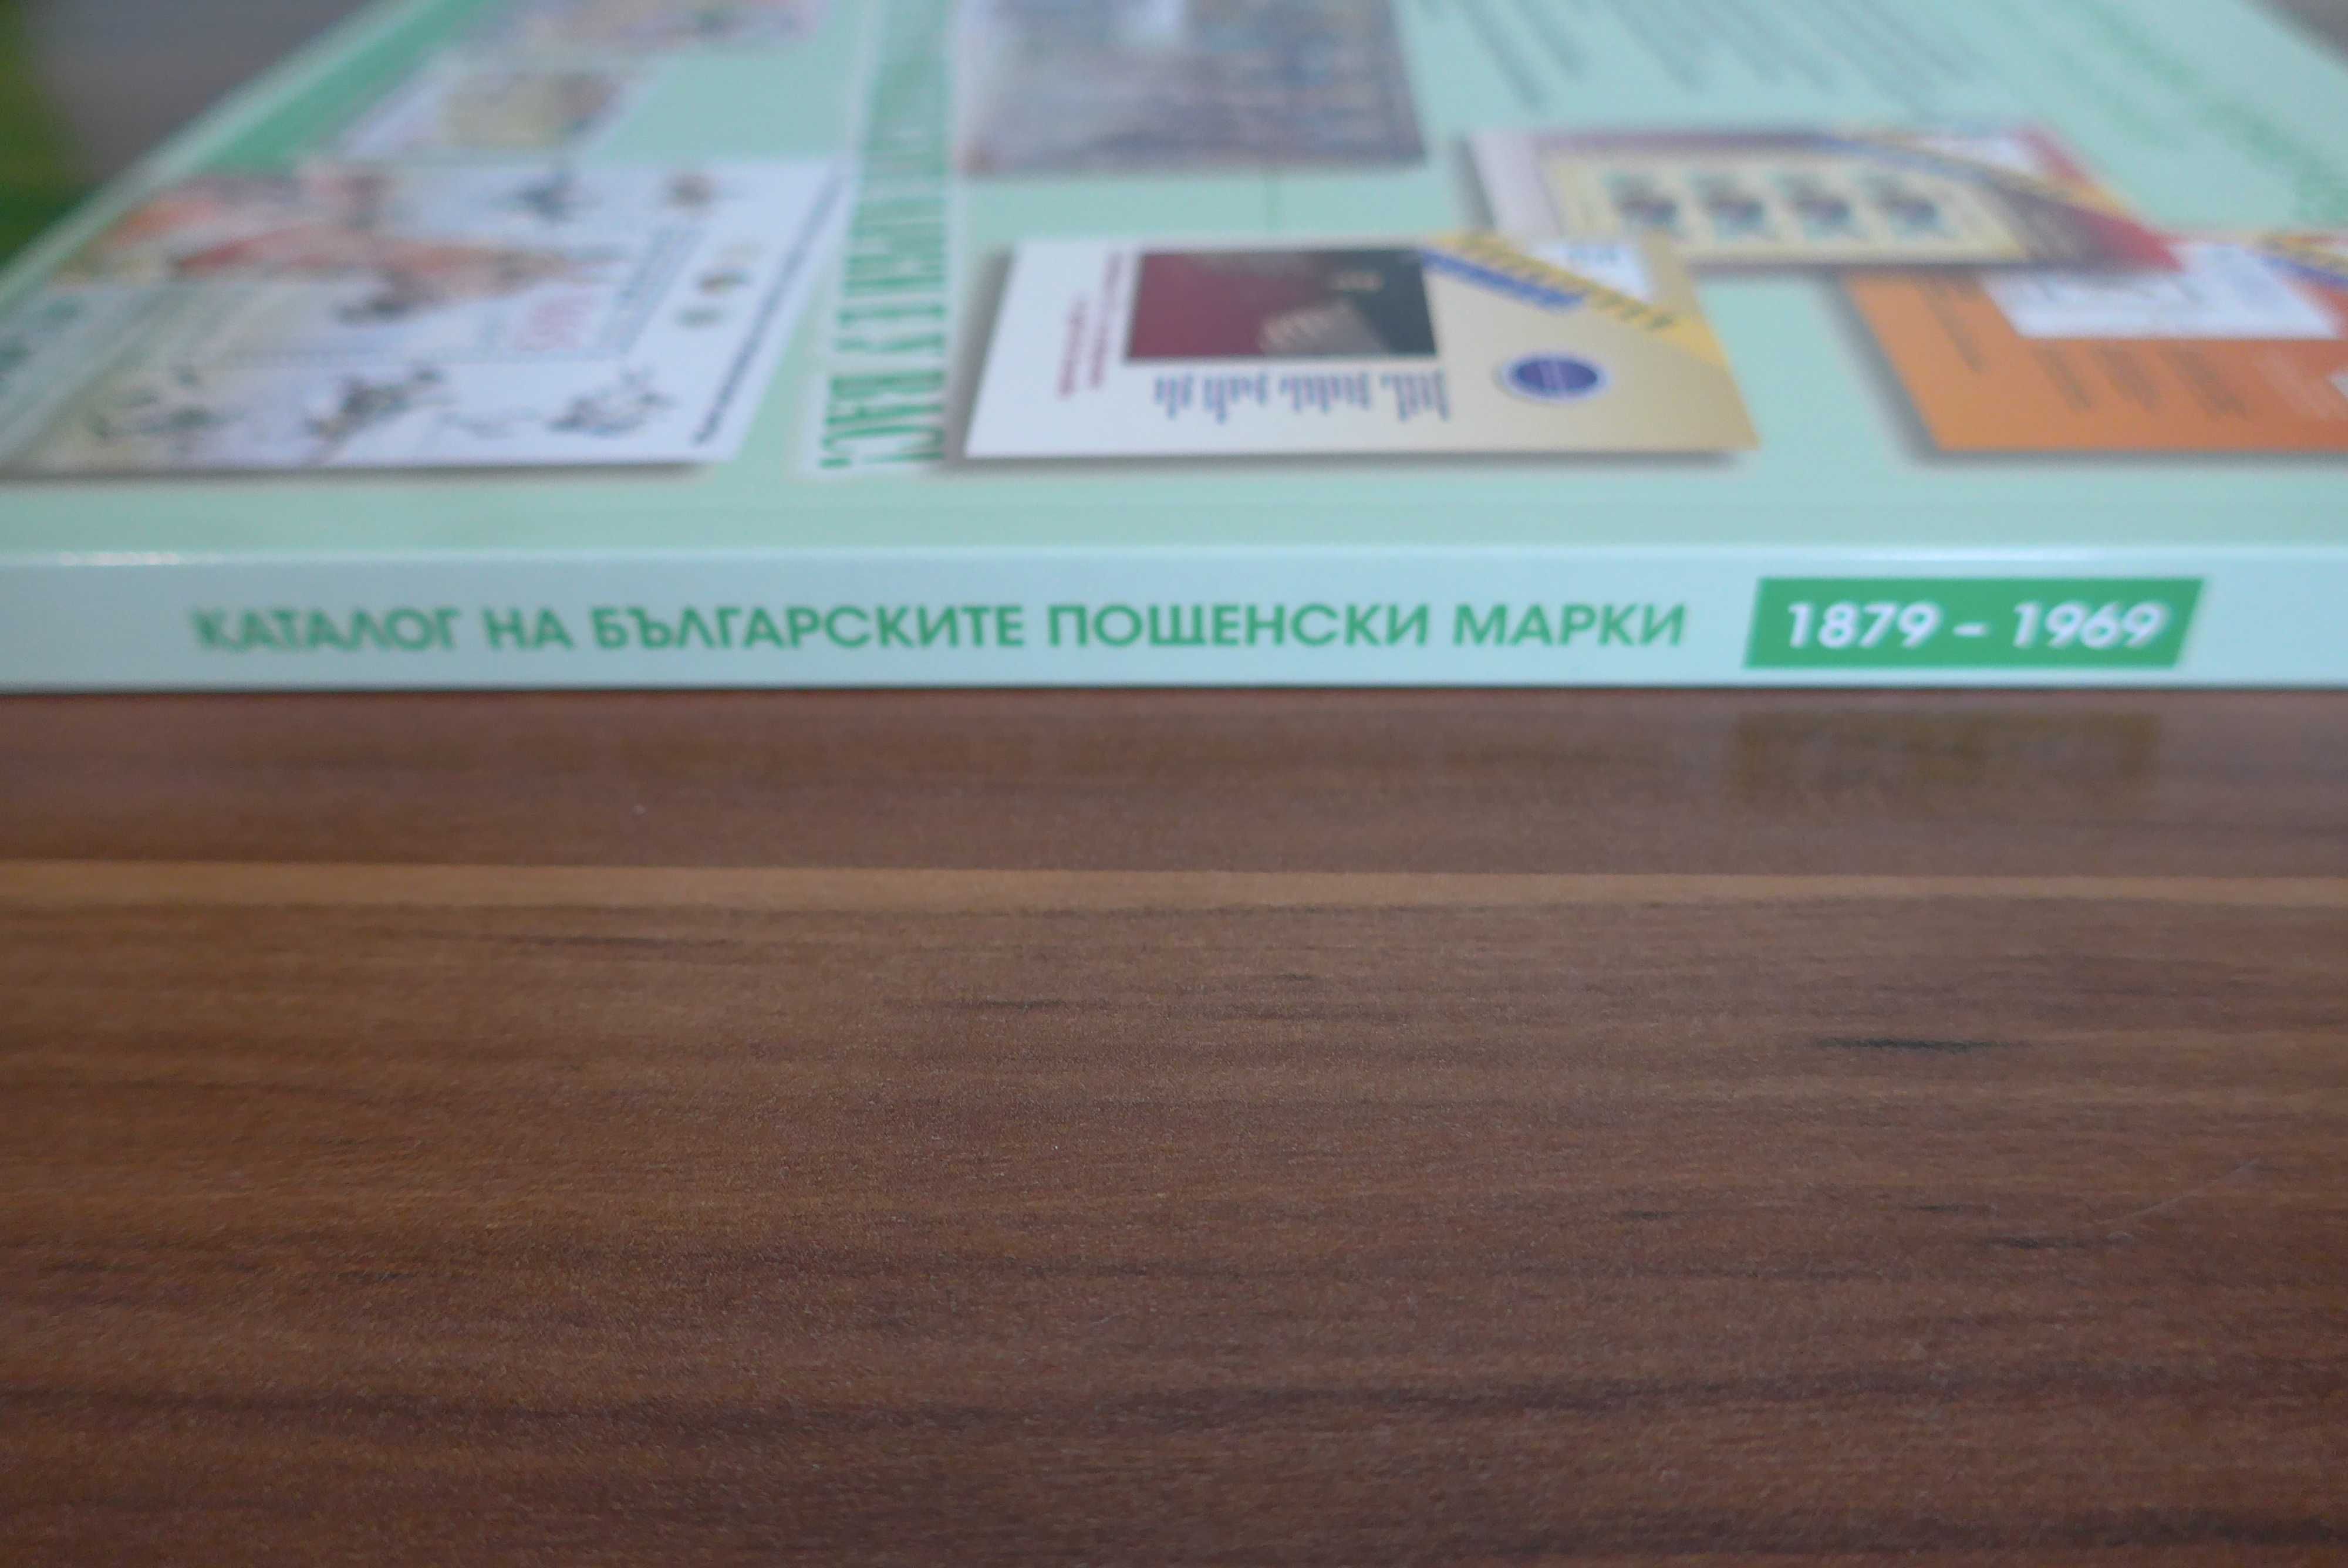 Каталог на българските пощенски марки 1879-1969 последно издание